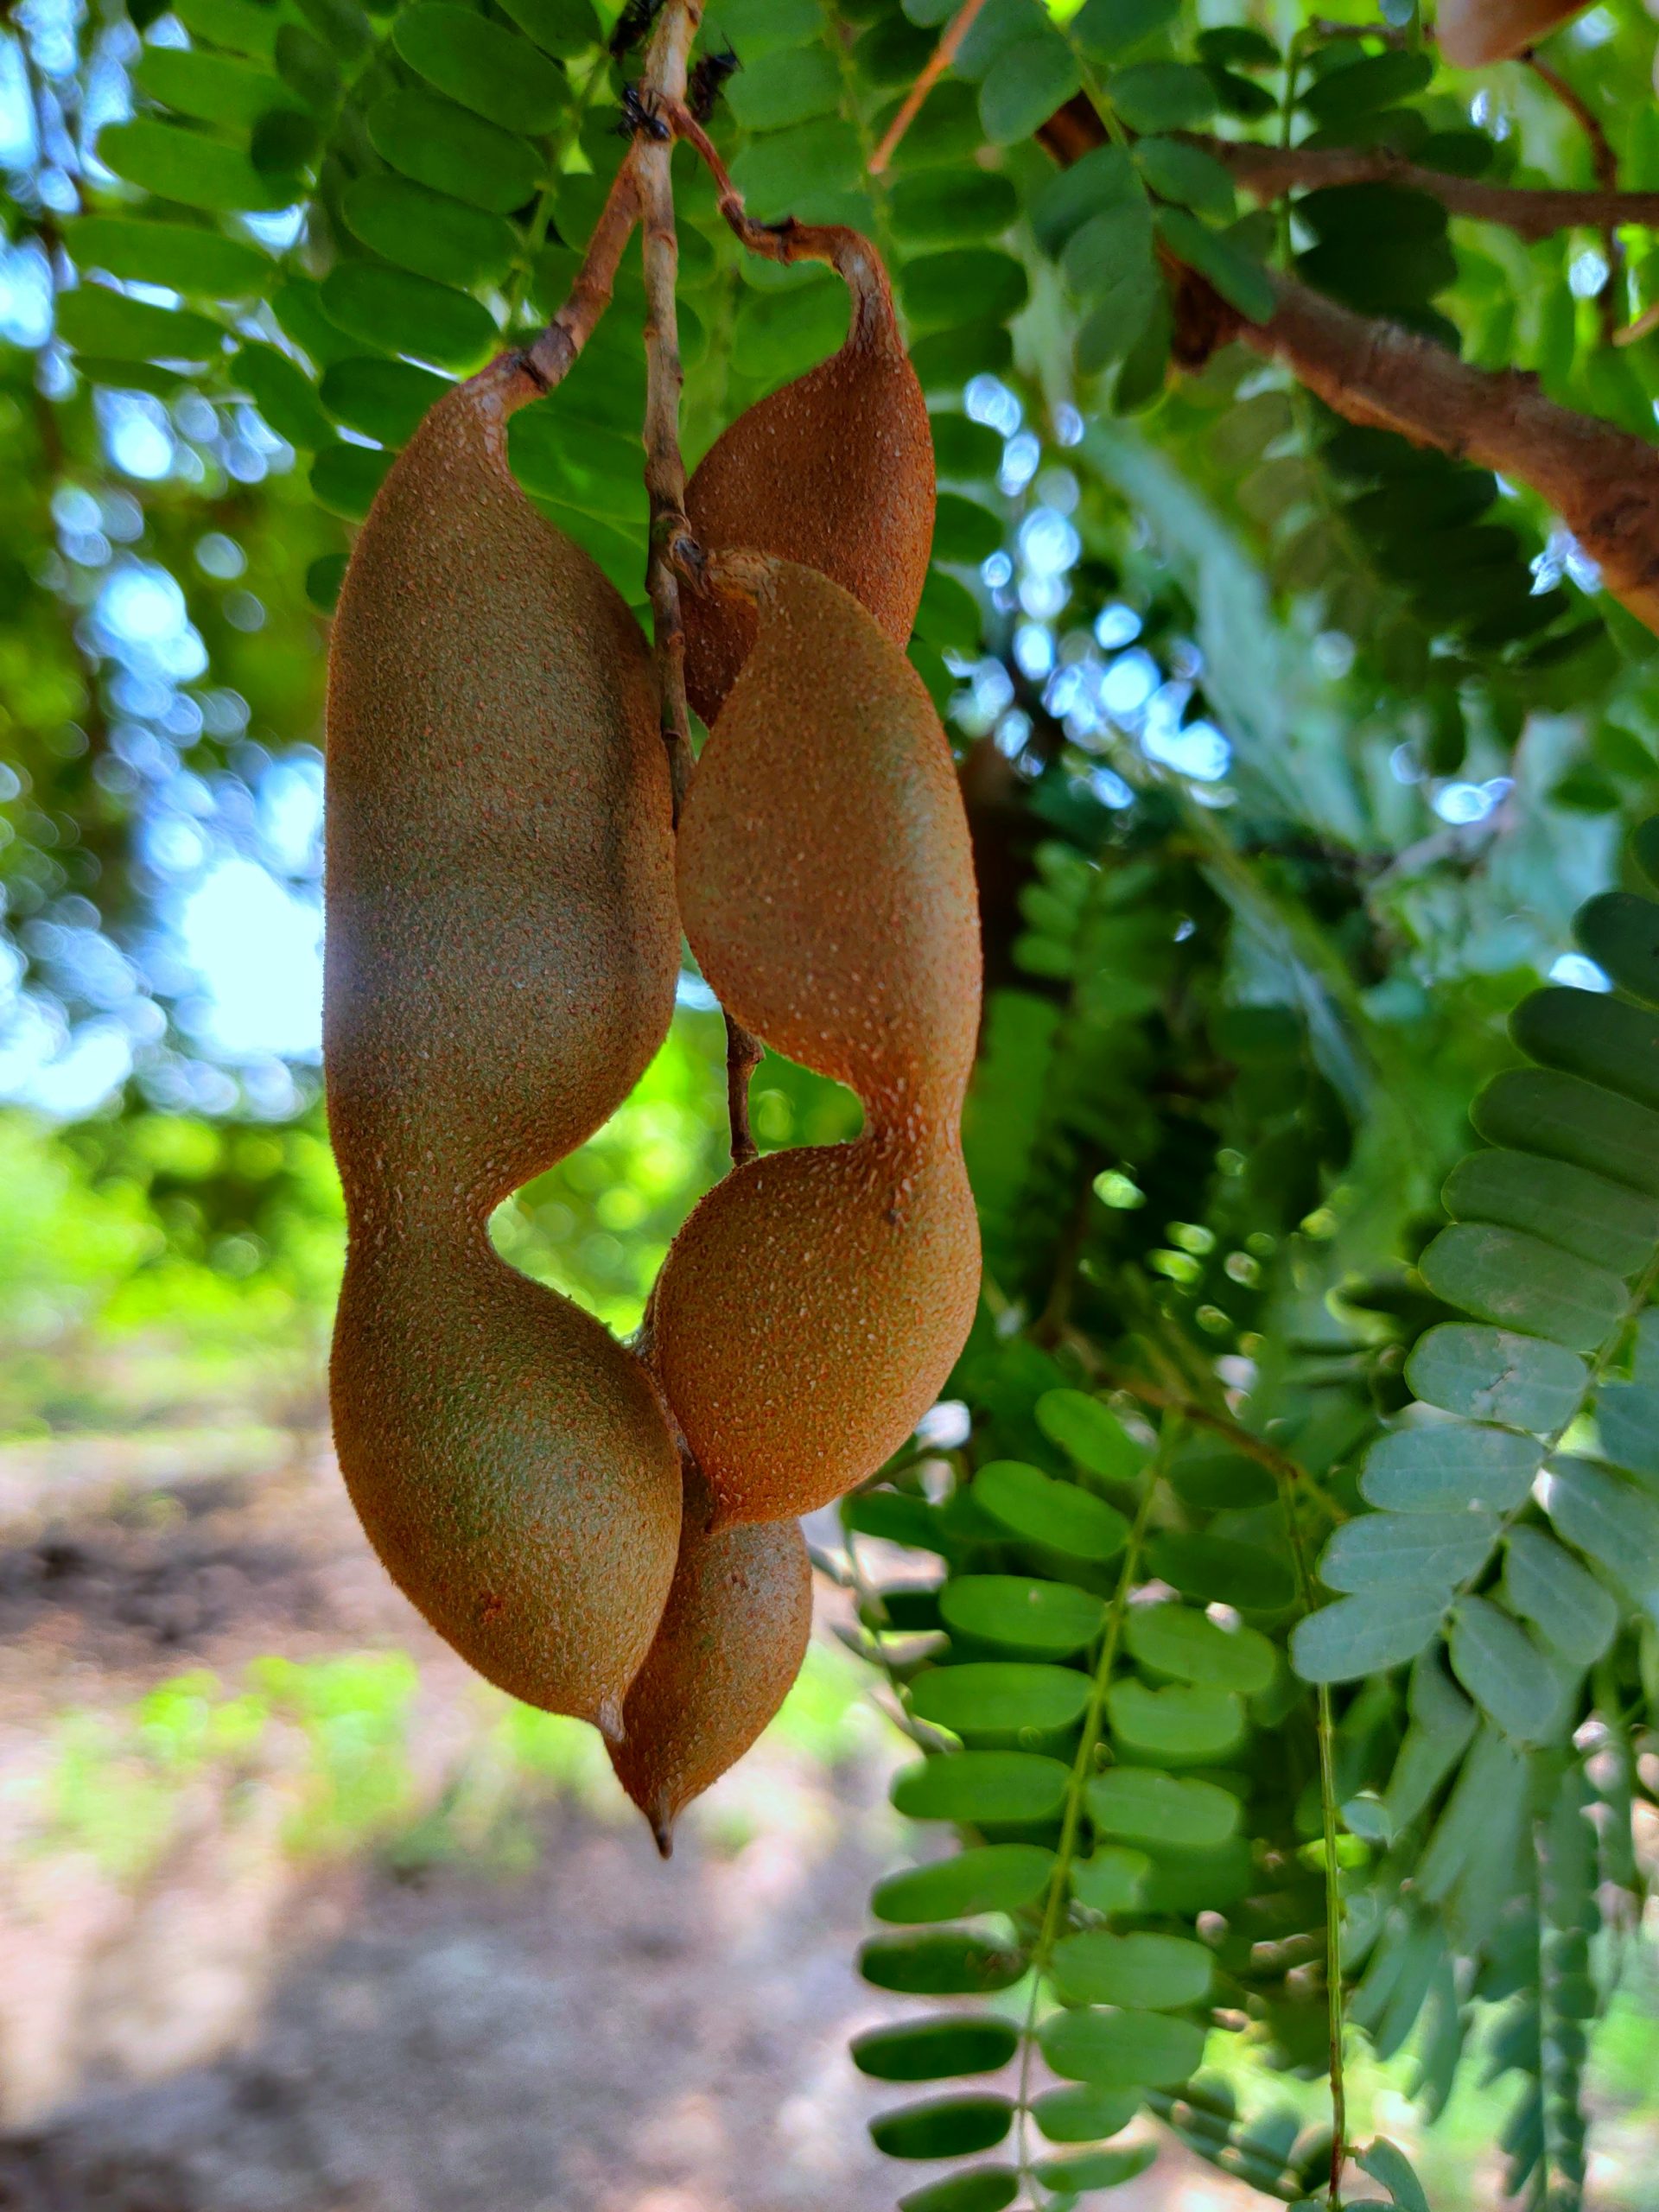 Tamarind fruits on tree